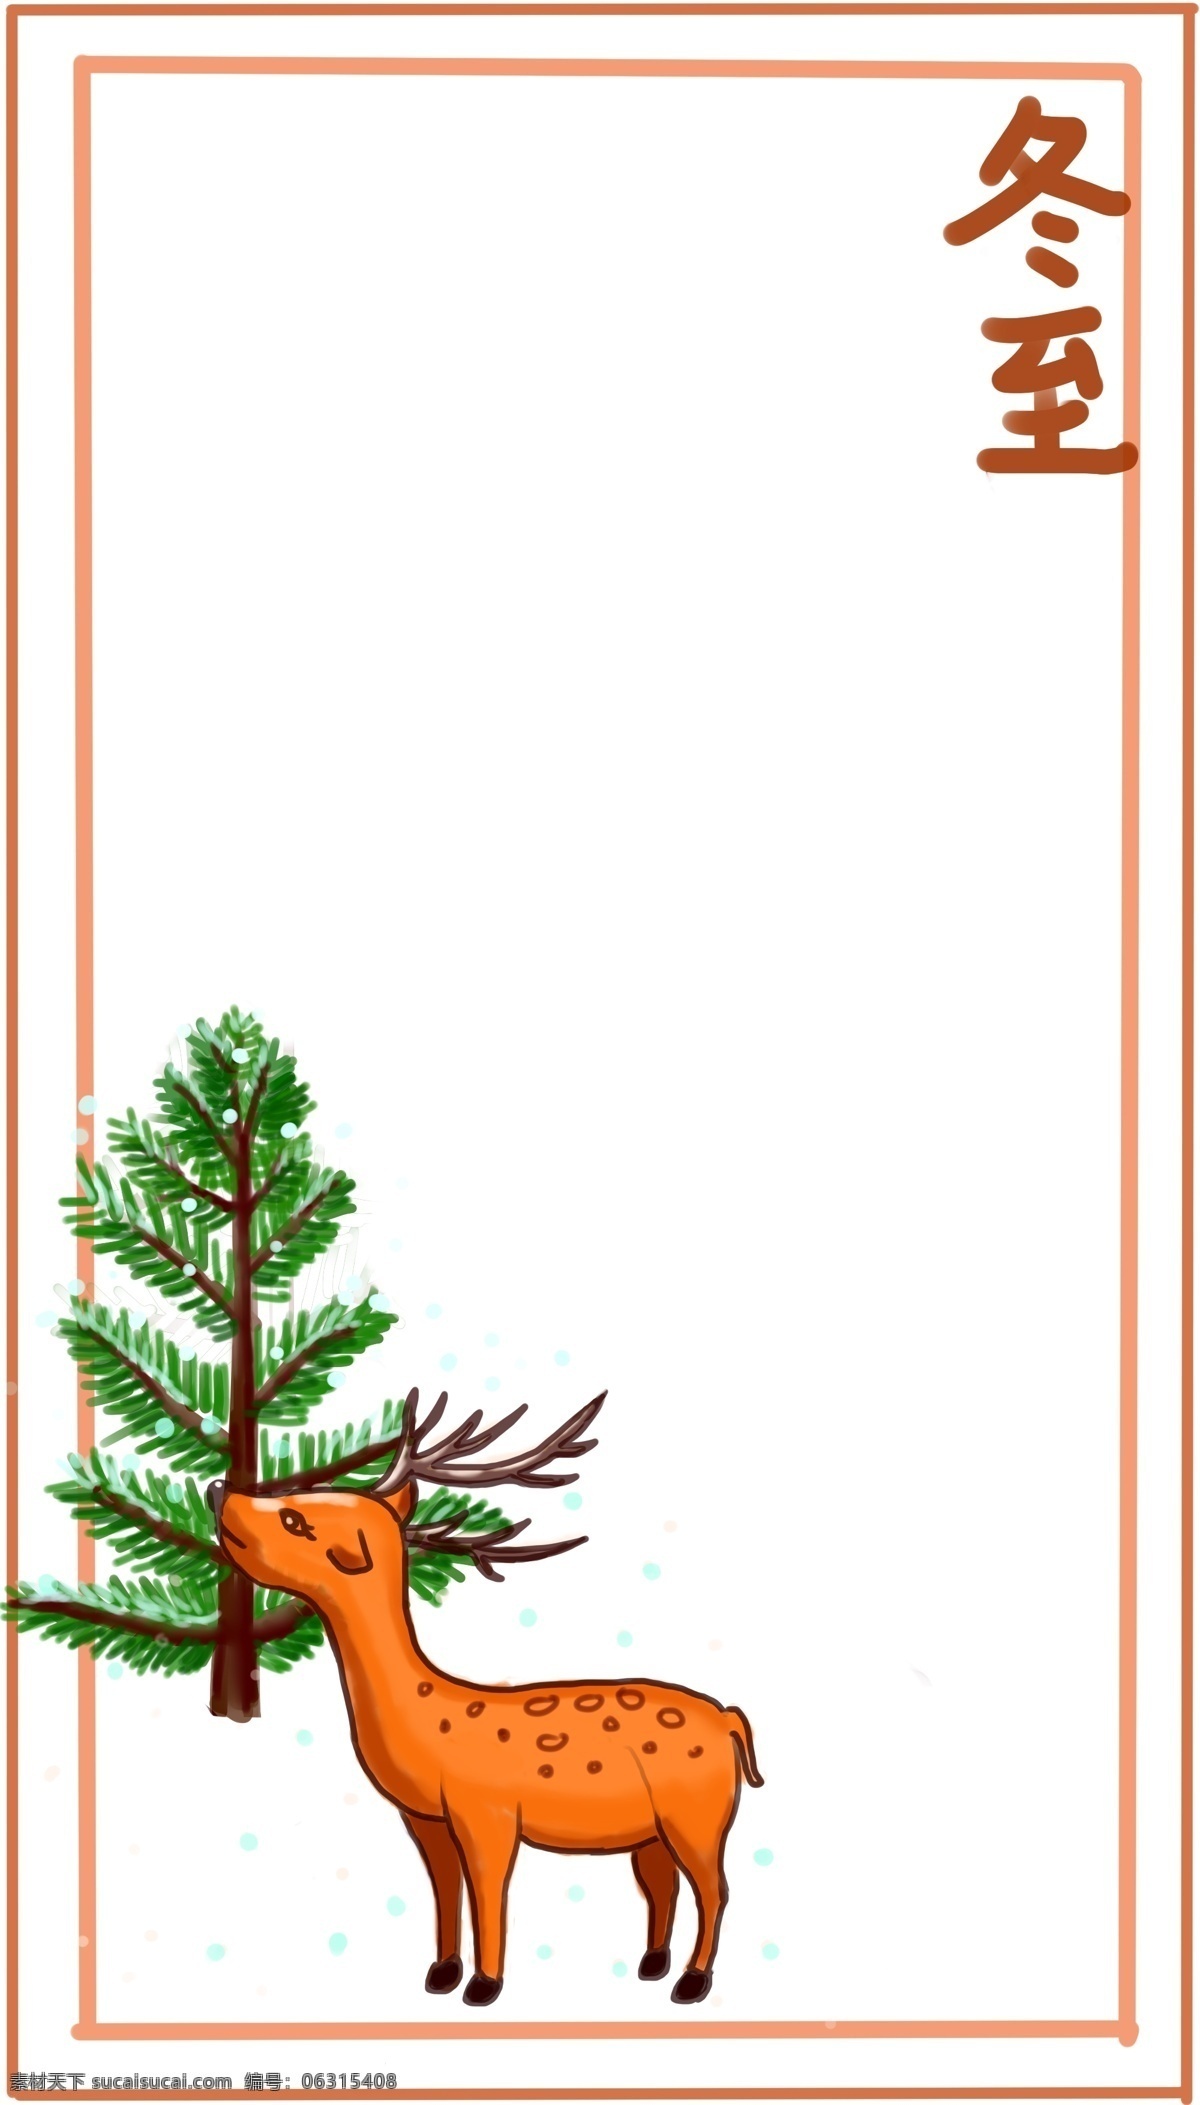 冬至 小鹿 背景 边框 冬至边框背景 红色的边框 绿色的树木 可爱的小鹿 唯美边框 边框插画 落雪的树枝